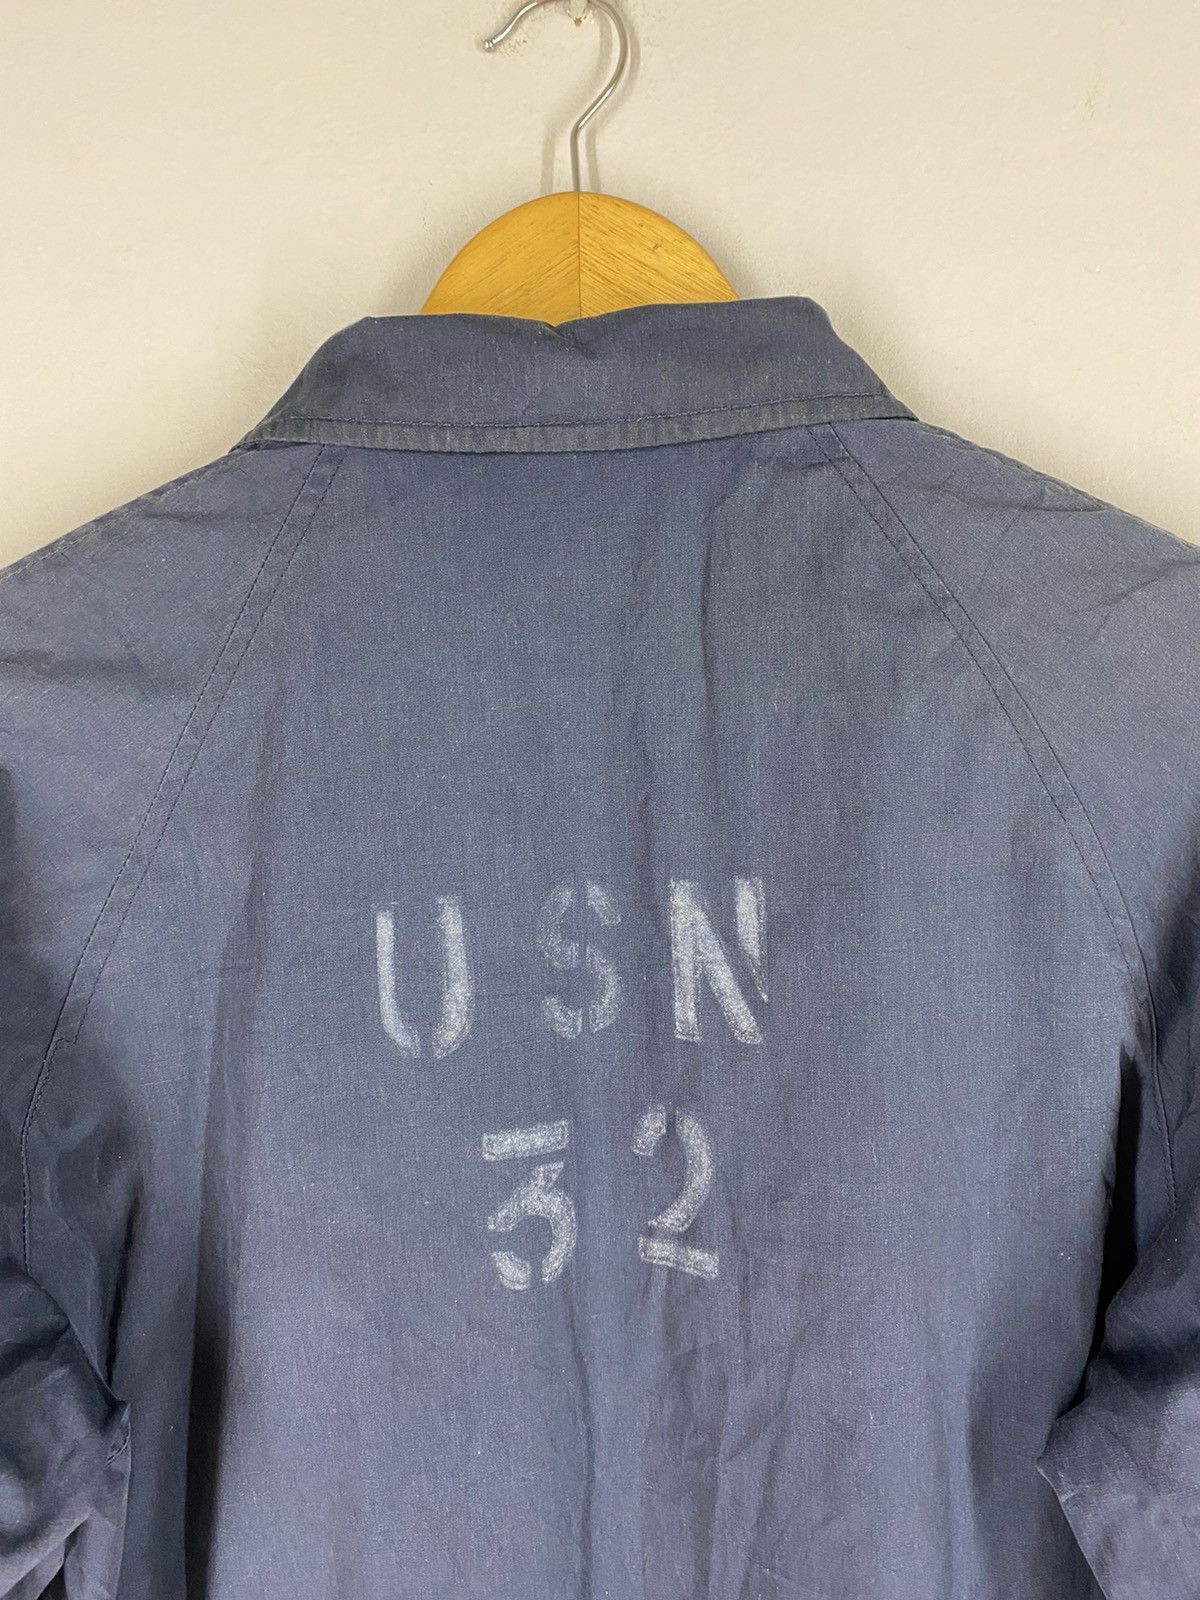 Usn Vintage 80s USN 32 Top Zipper Jacket Size US S / EU 44-46 / 1 - 9 Preview